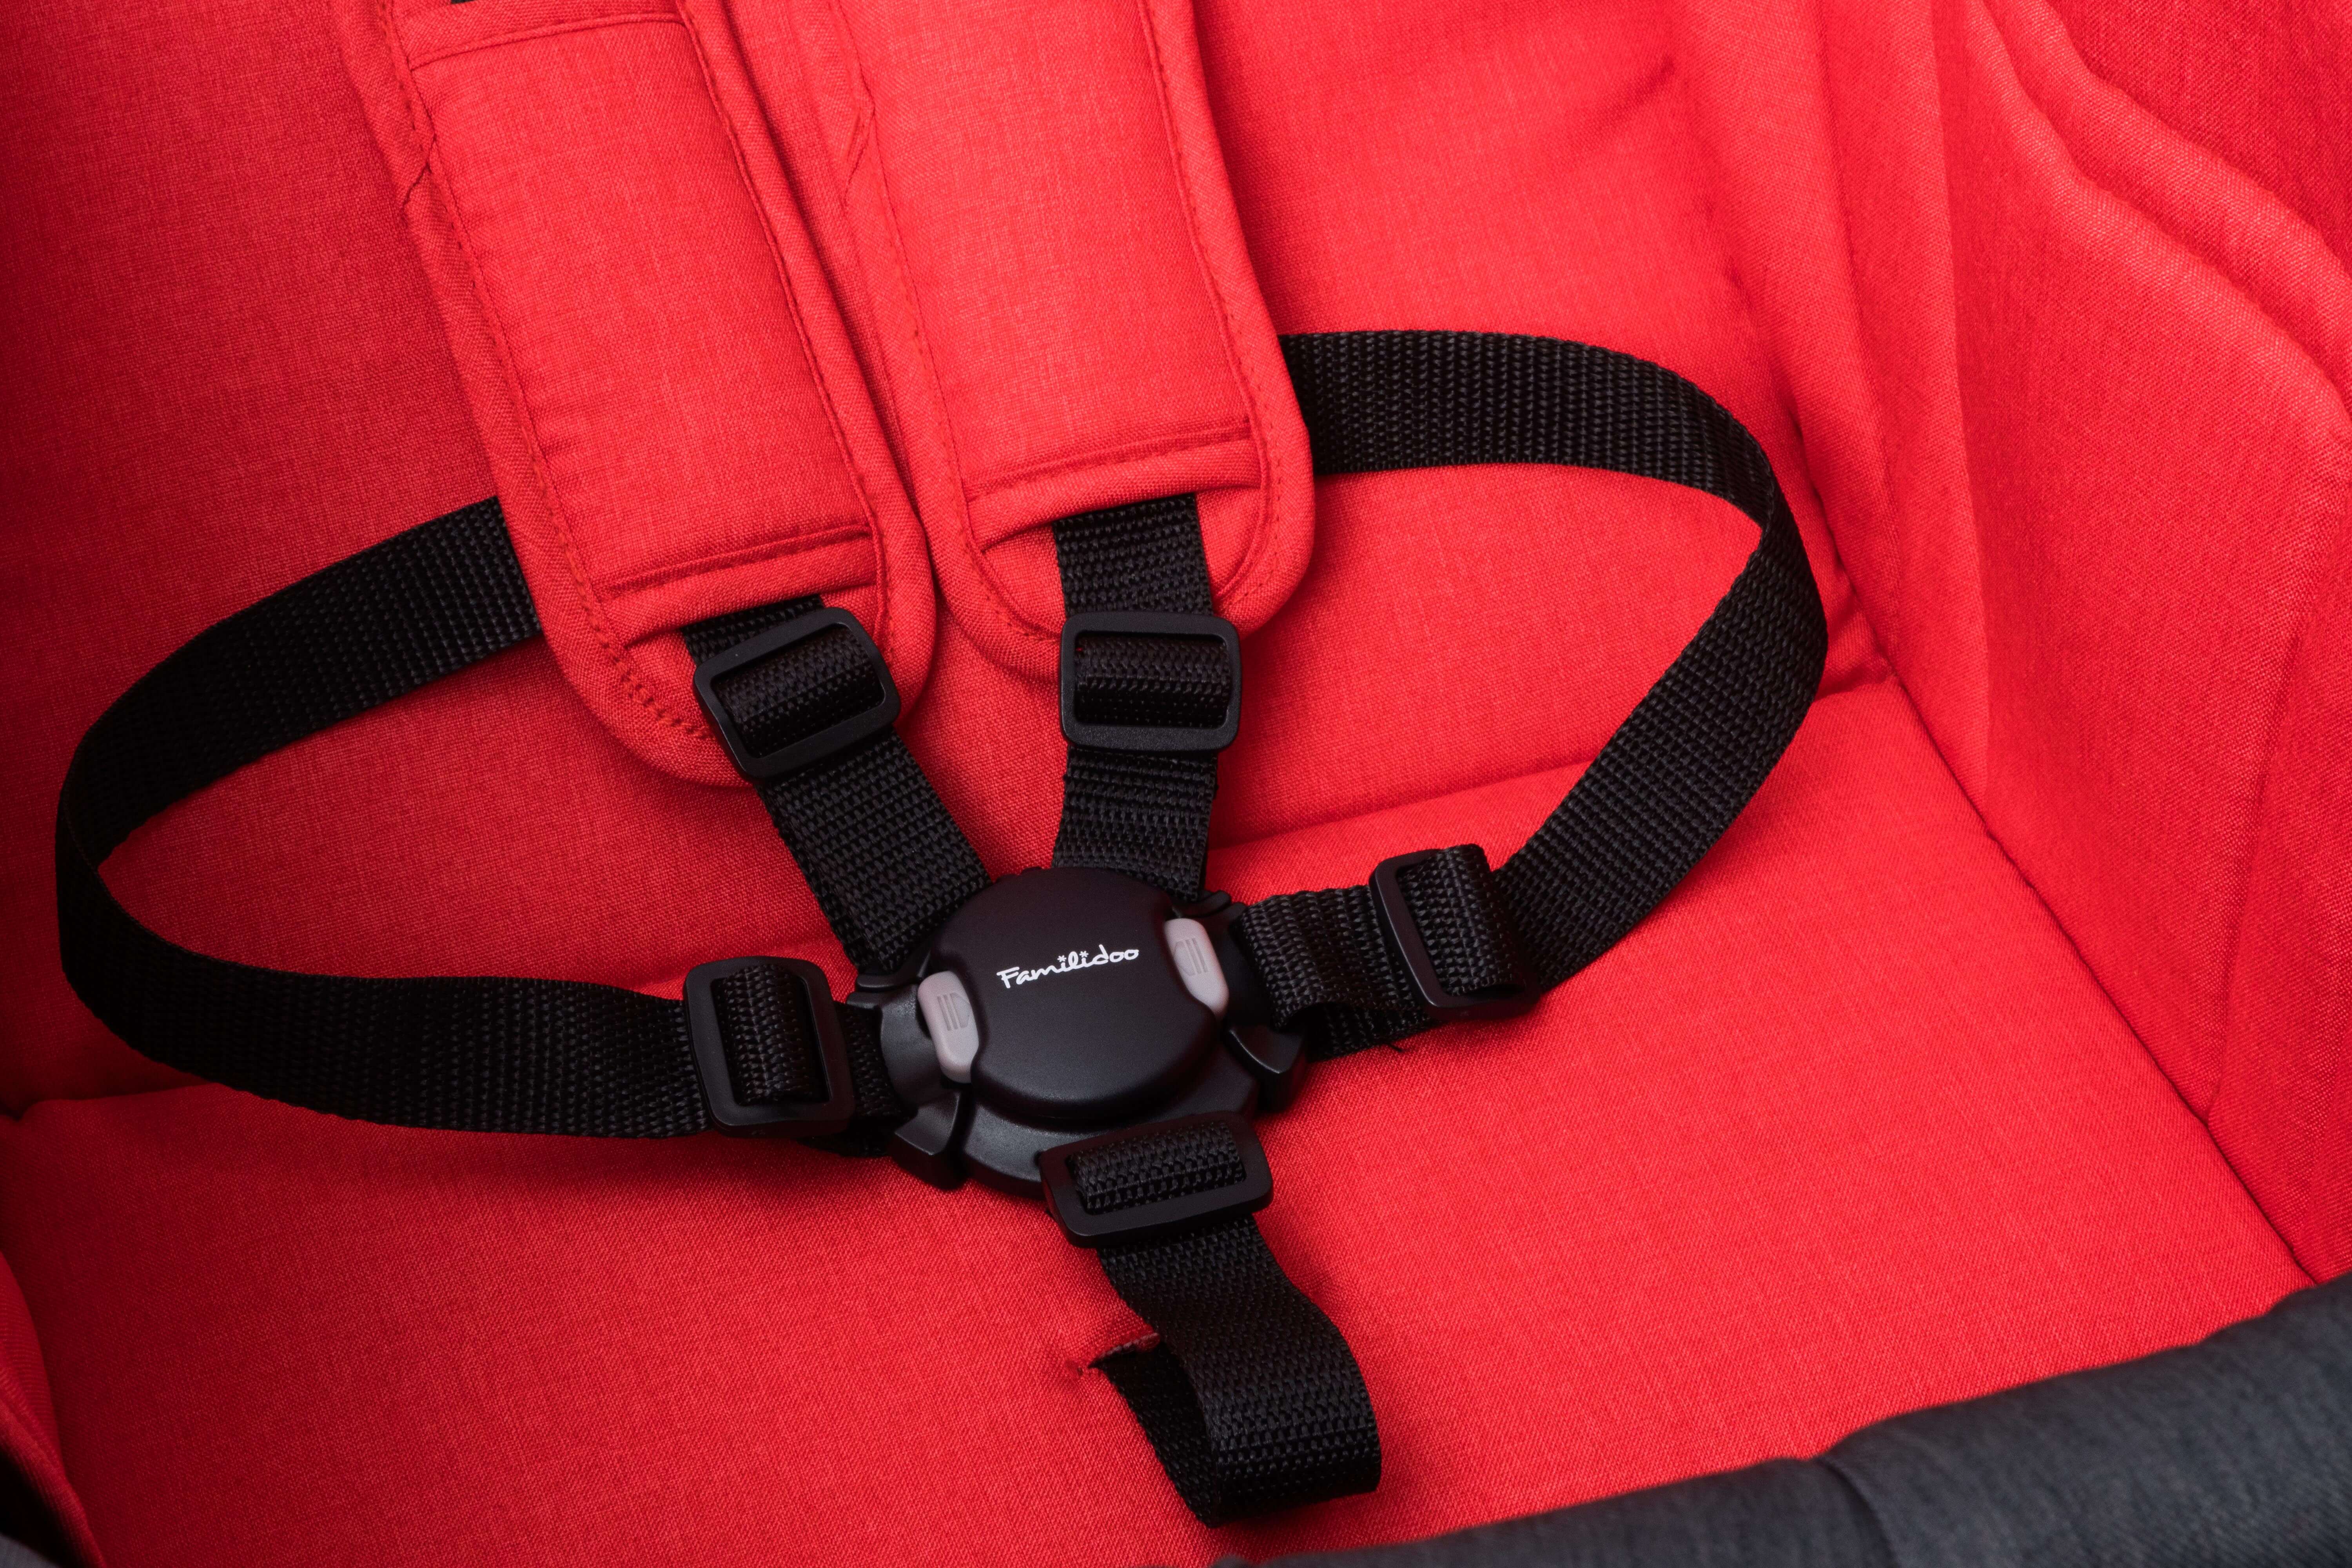 safety belt for stroller